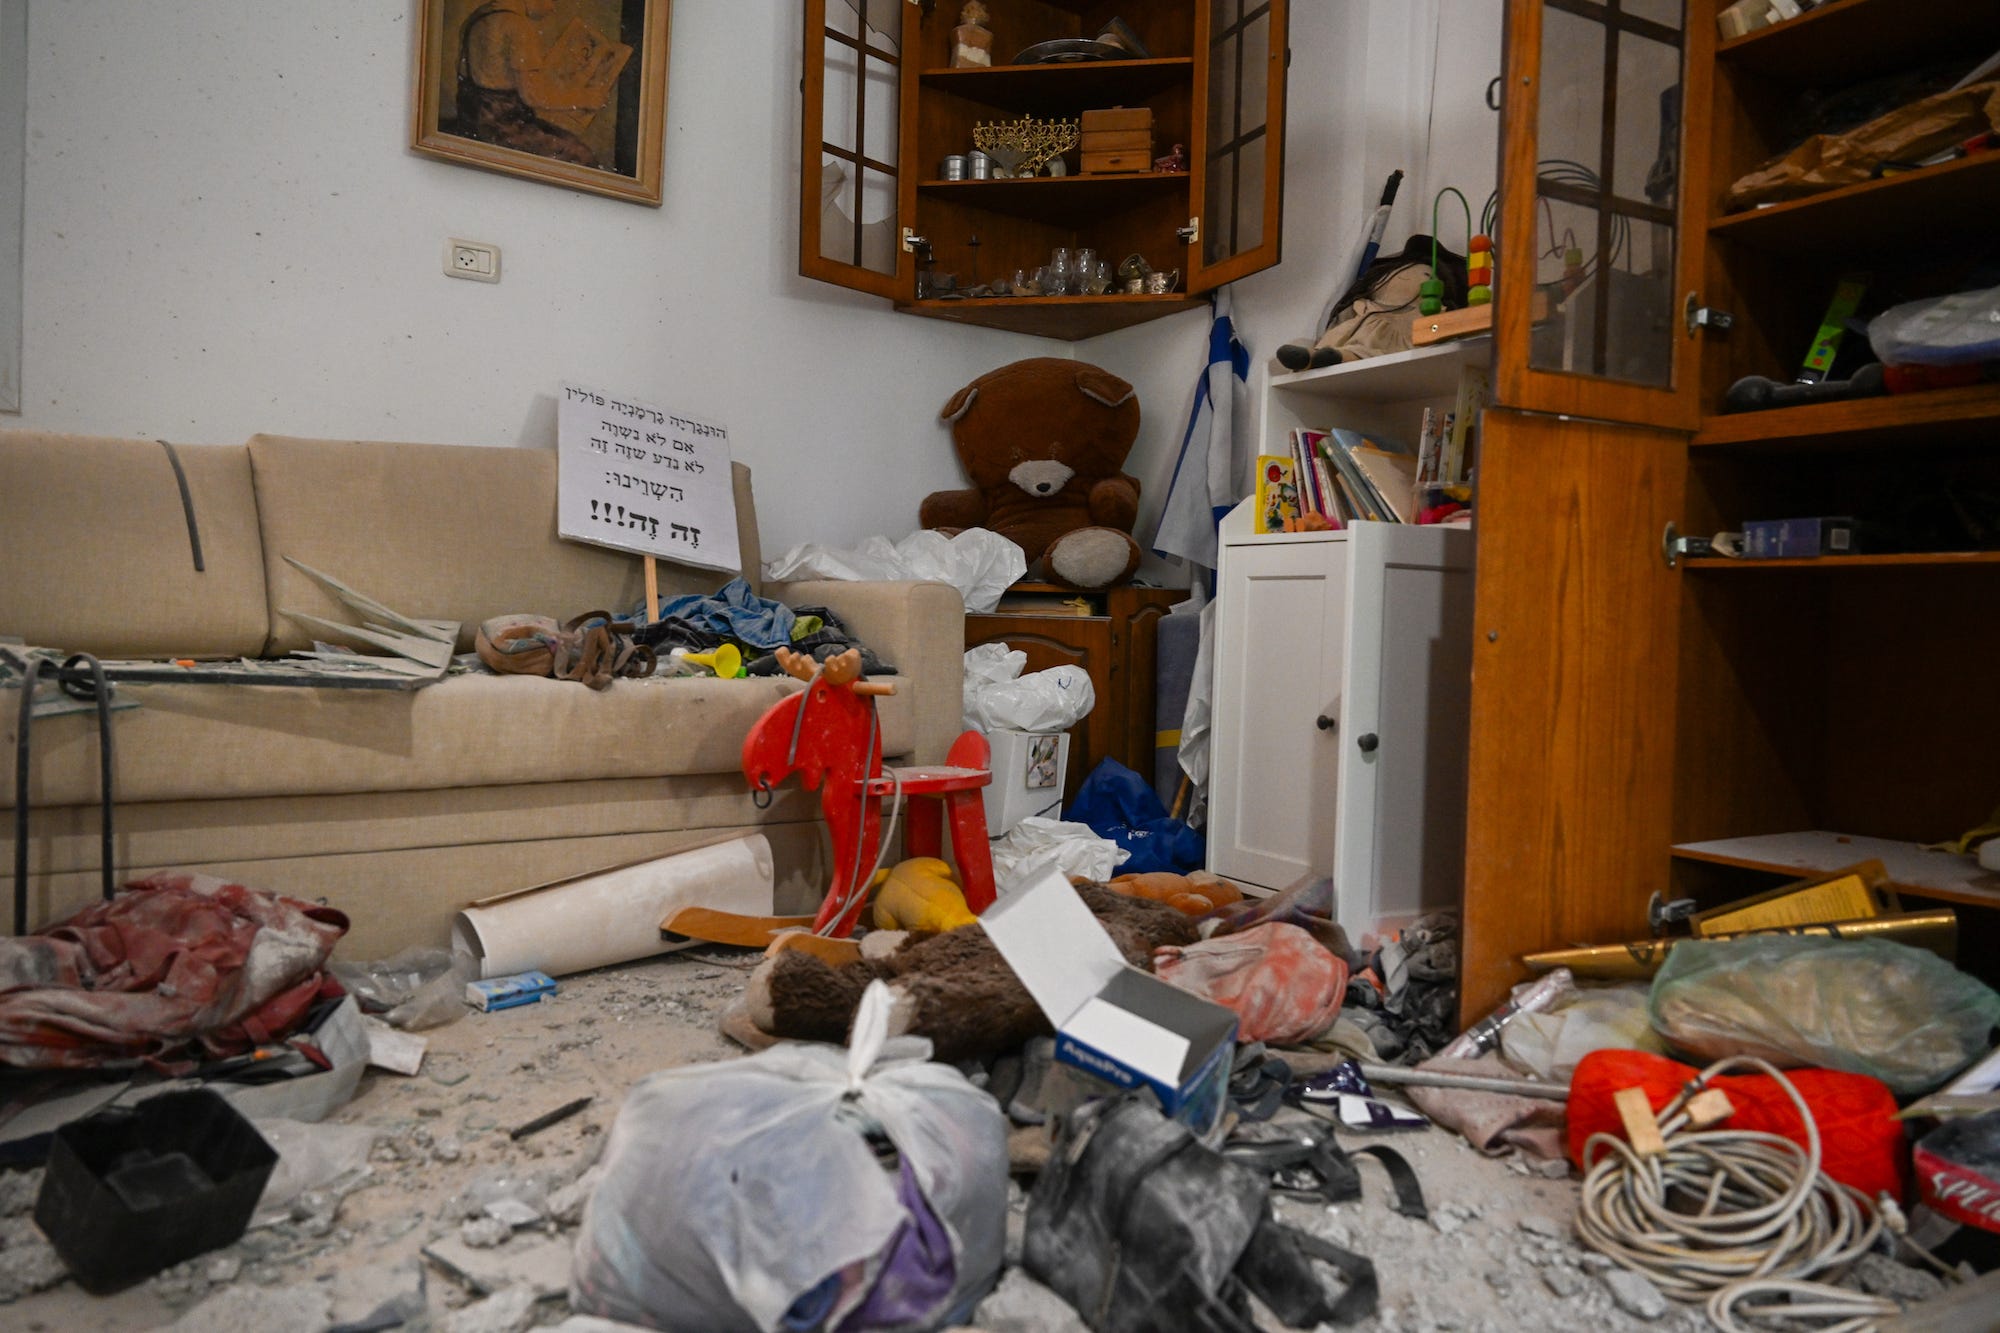 Familiengegenstände, darunter Teddybären, und das Judaica-Regal in einem Haus im Kibbuz Be'eri nahe der Grenze zum Gazastreifen, nachdem Hamas-Kämpfer am 7. Oktober angegriffen hatten.